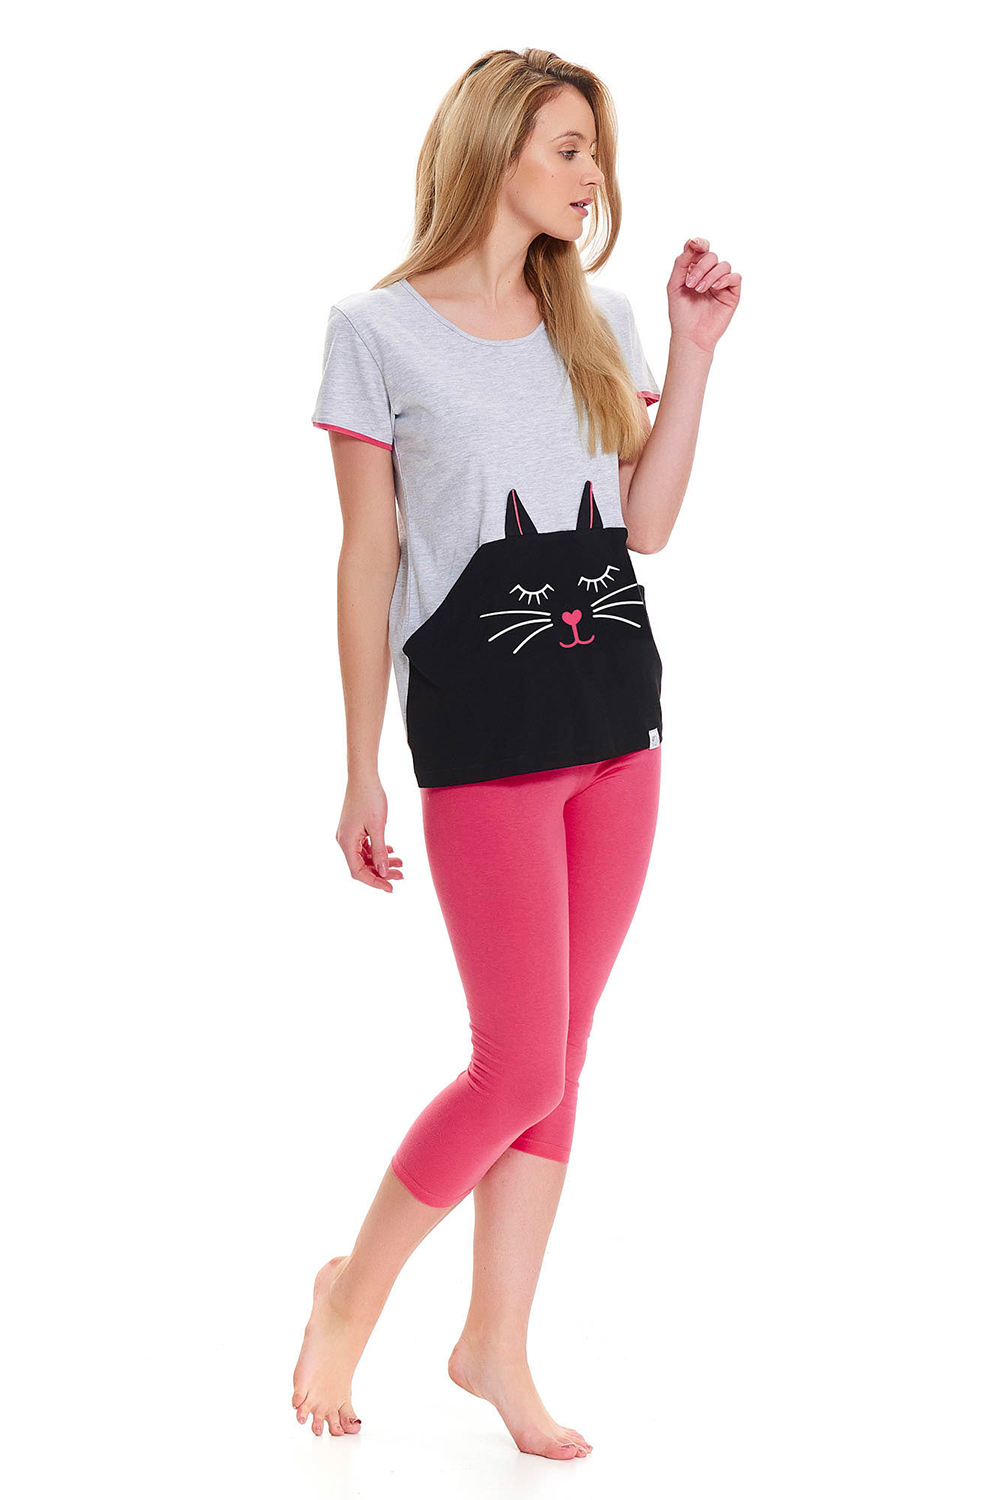 Серая футболка с котом и бриджи розового цвета